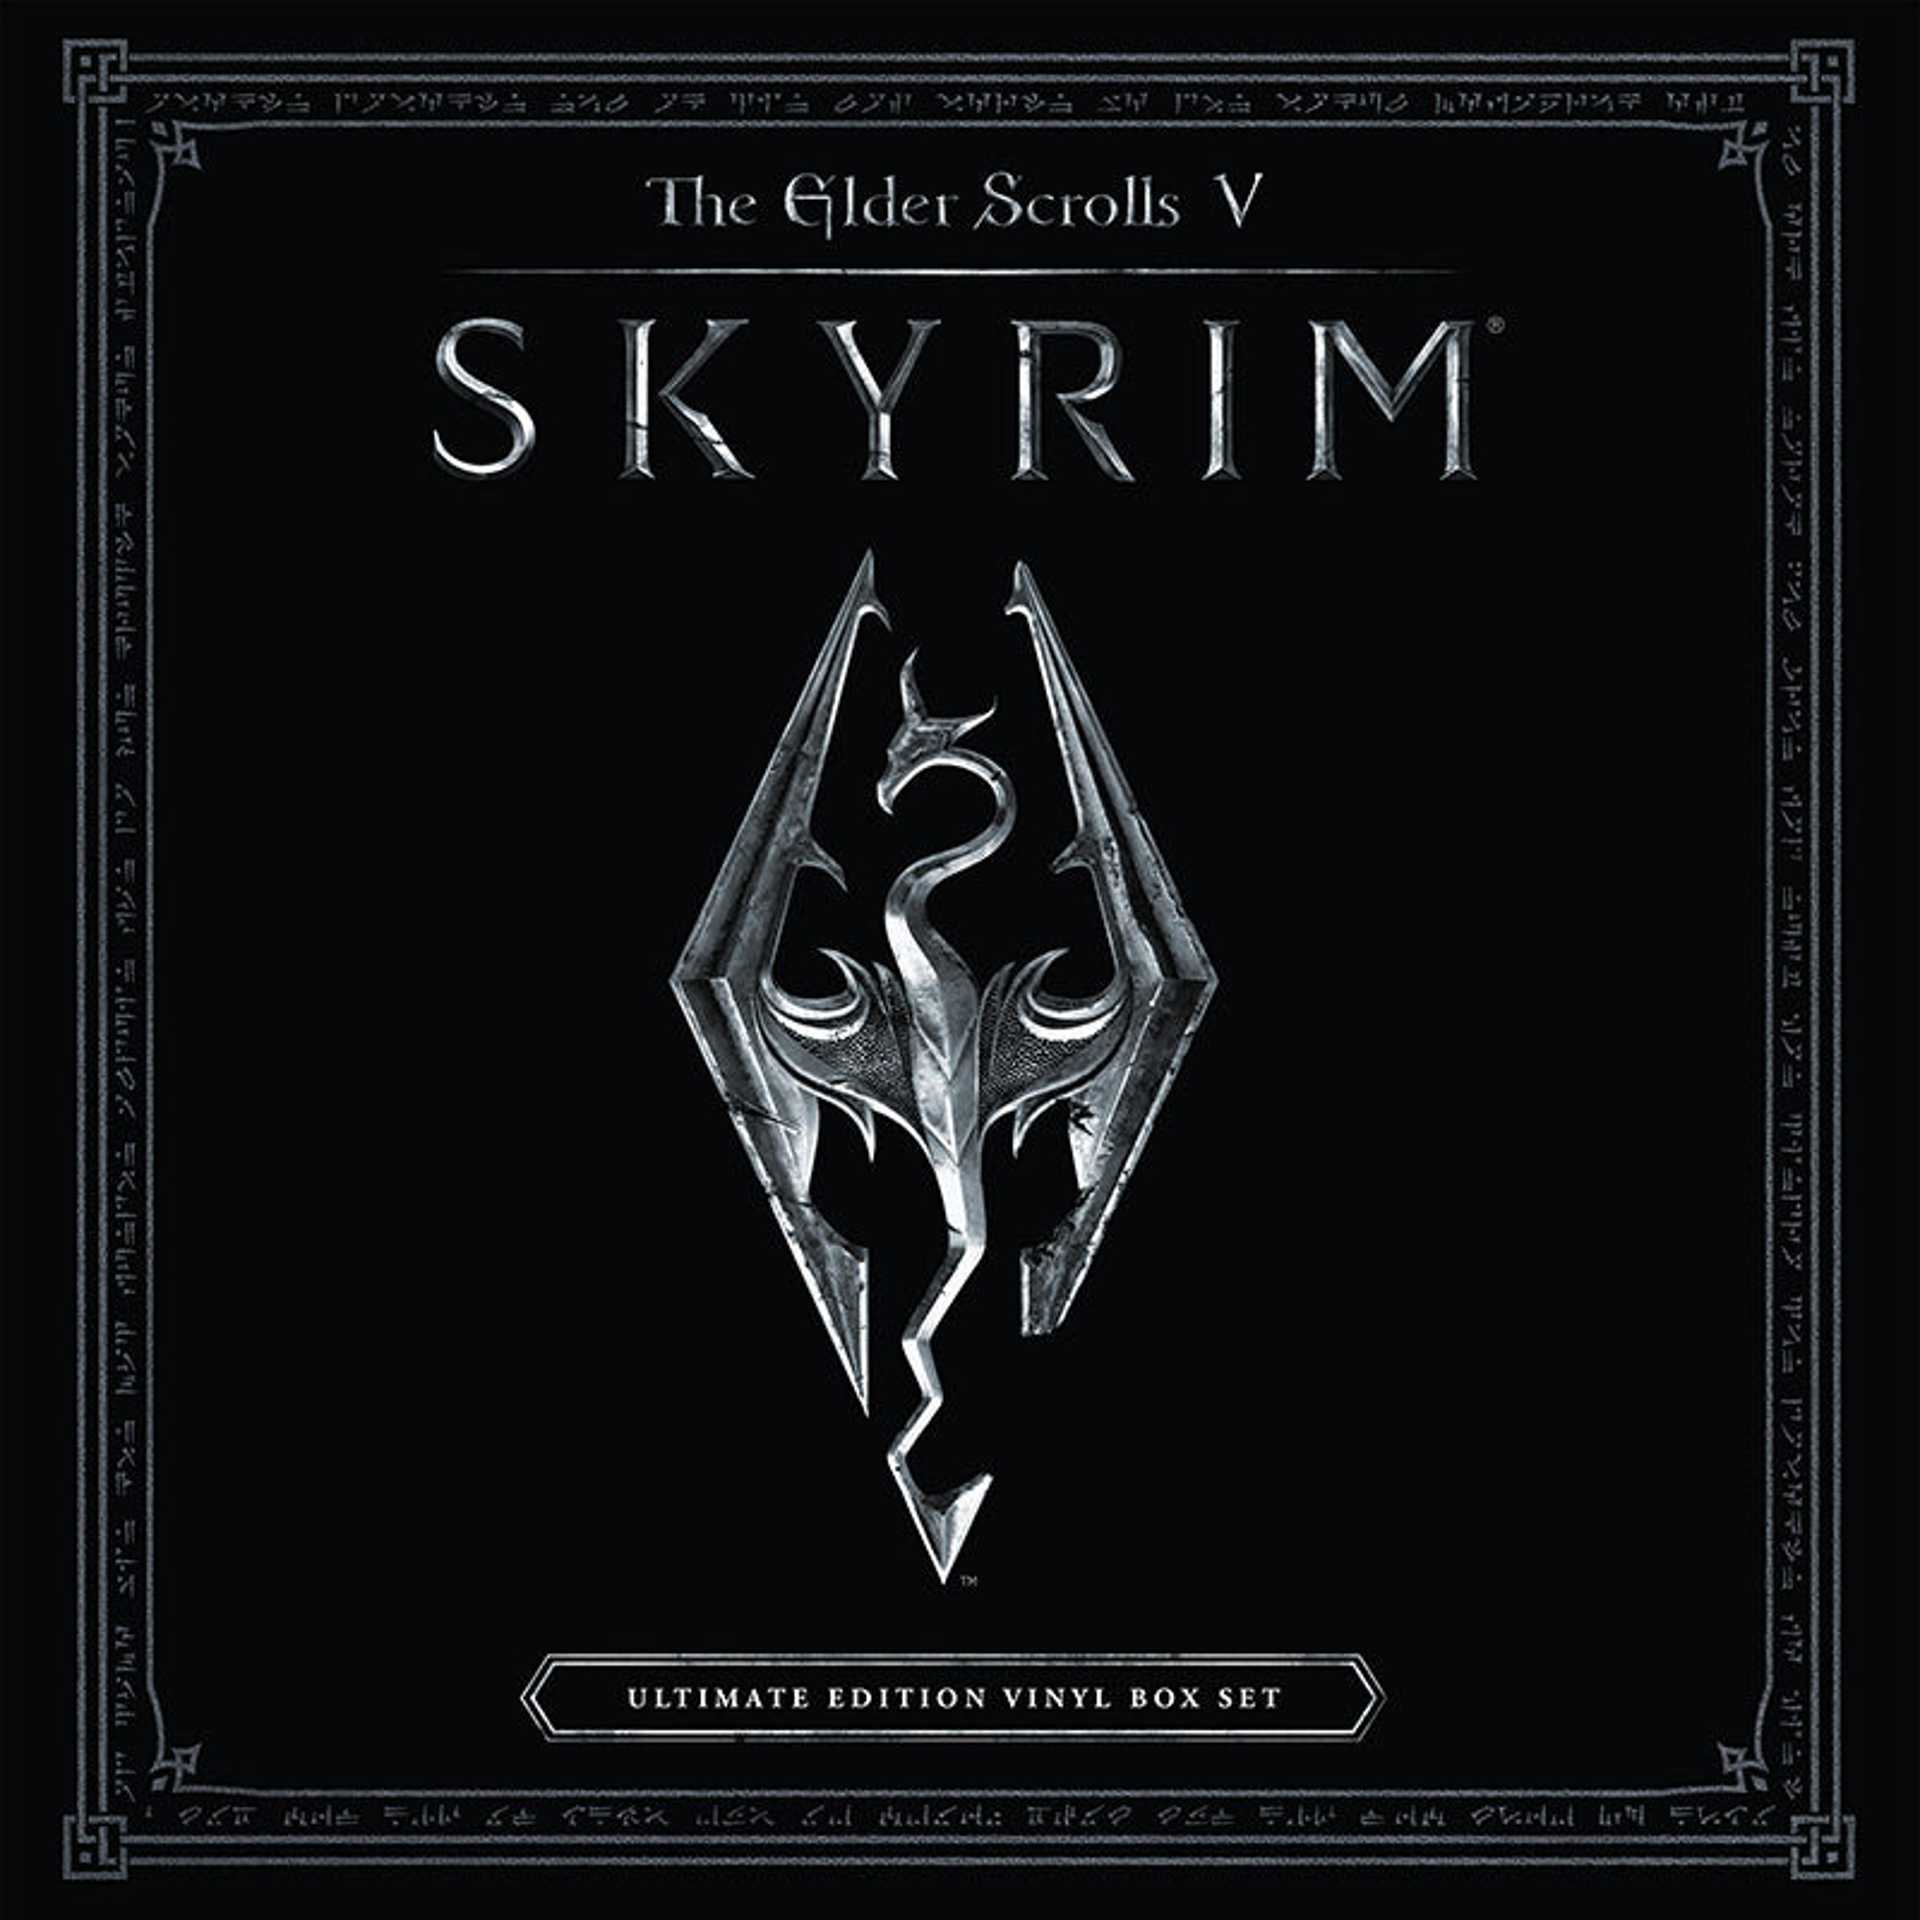 The Elder Scrolls V: Skyrim Ultimate Box Set Edition - Original Soundtrack - 4-LP Gold Vinyl